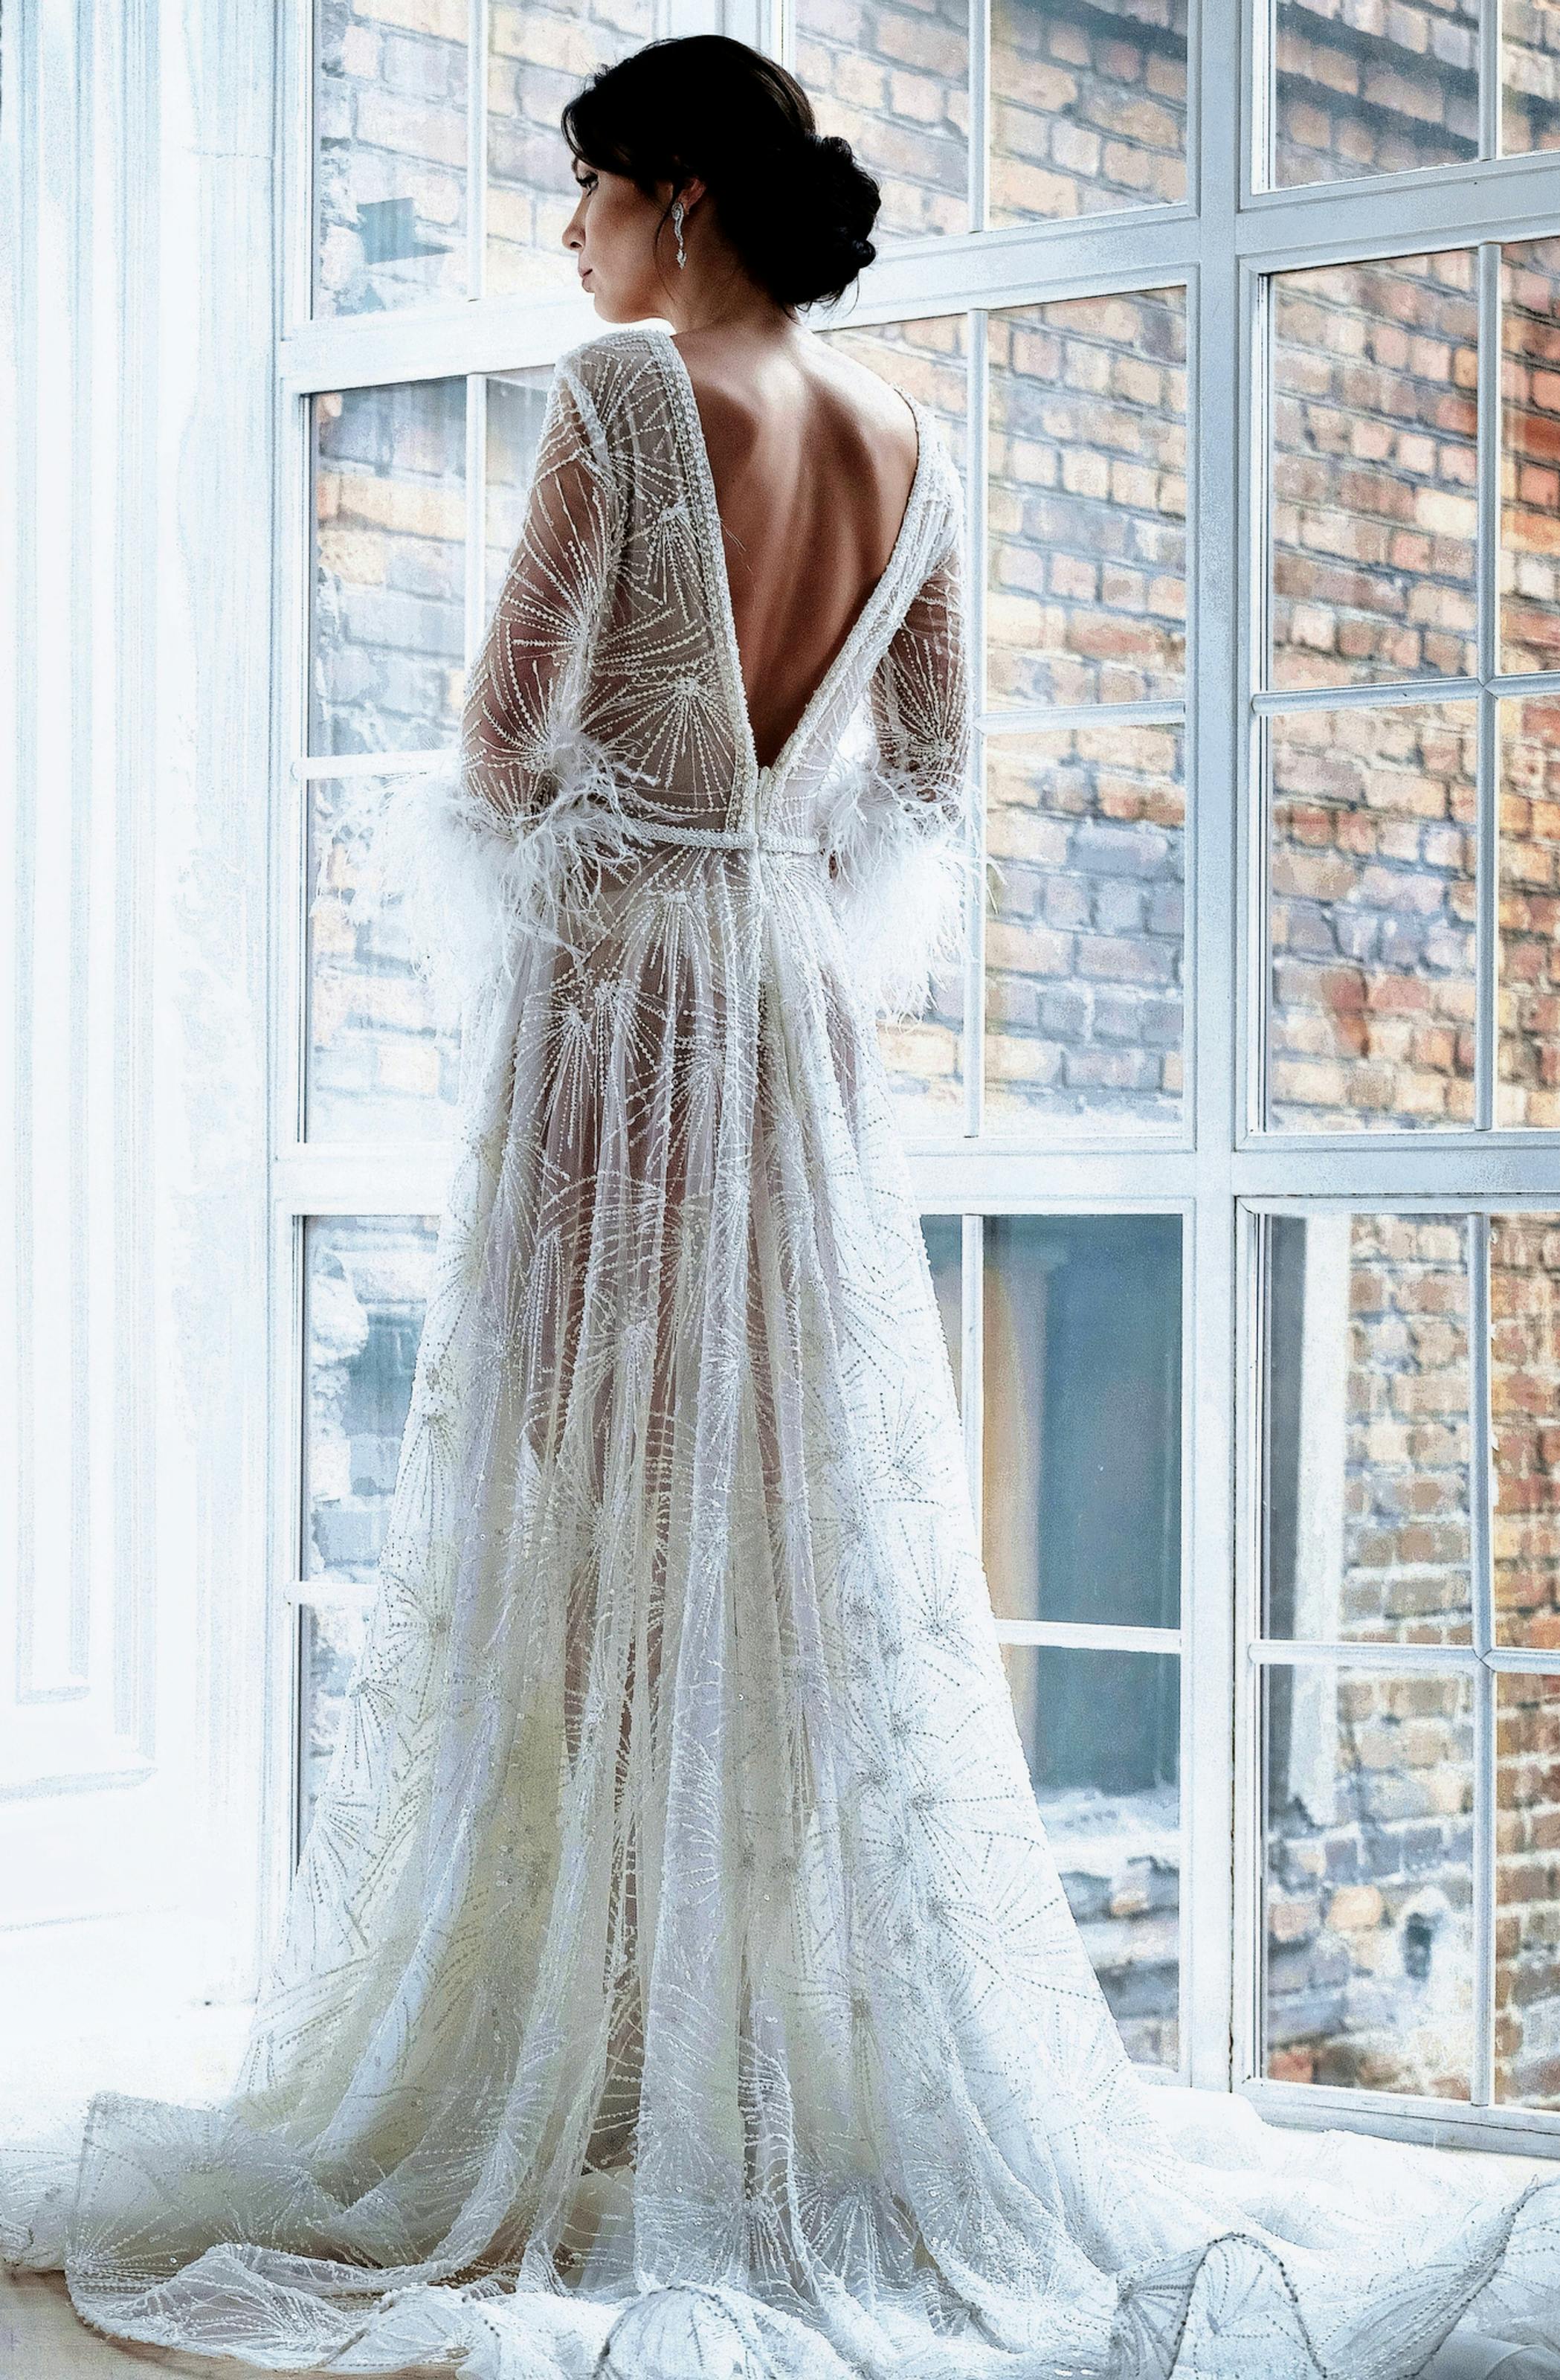 Une mariée en robe de mariée | Source : Pexels